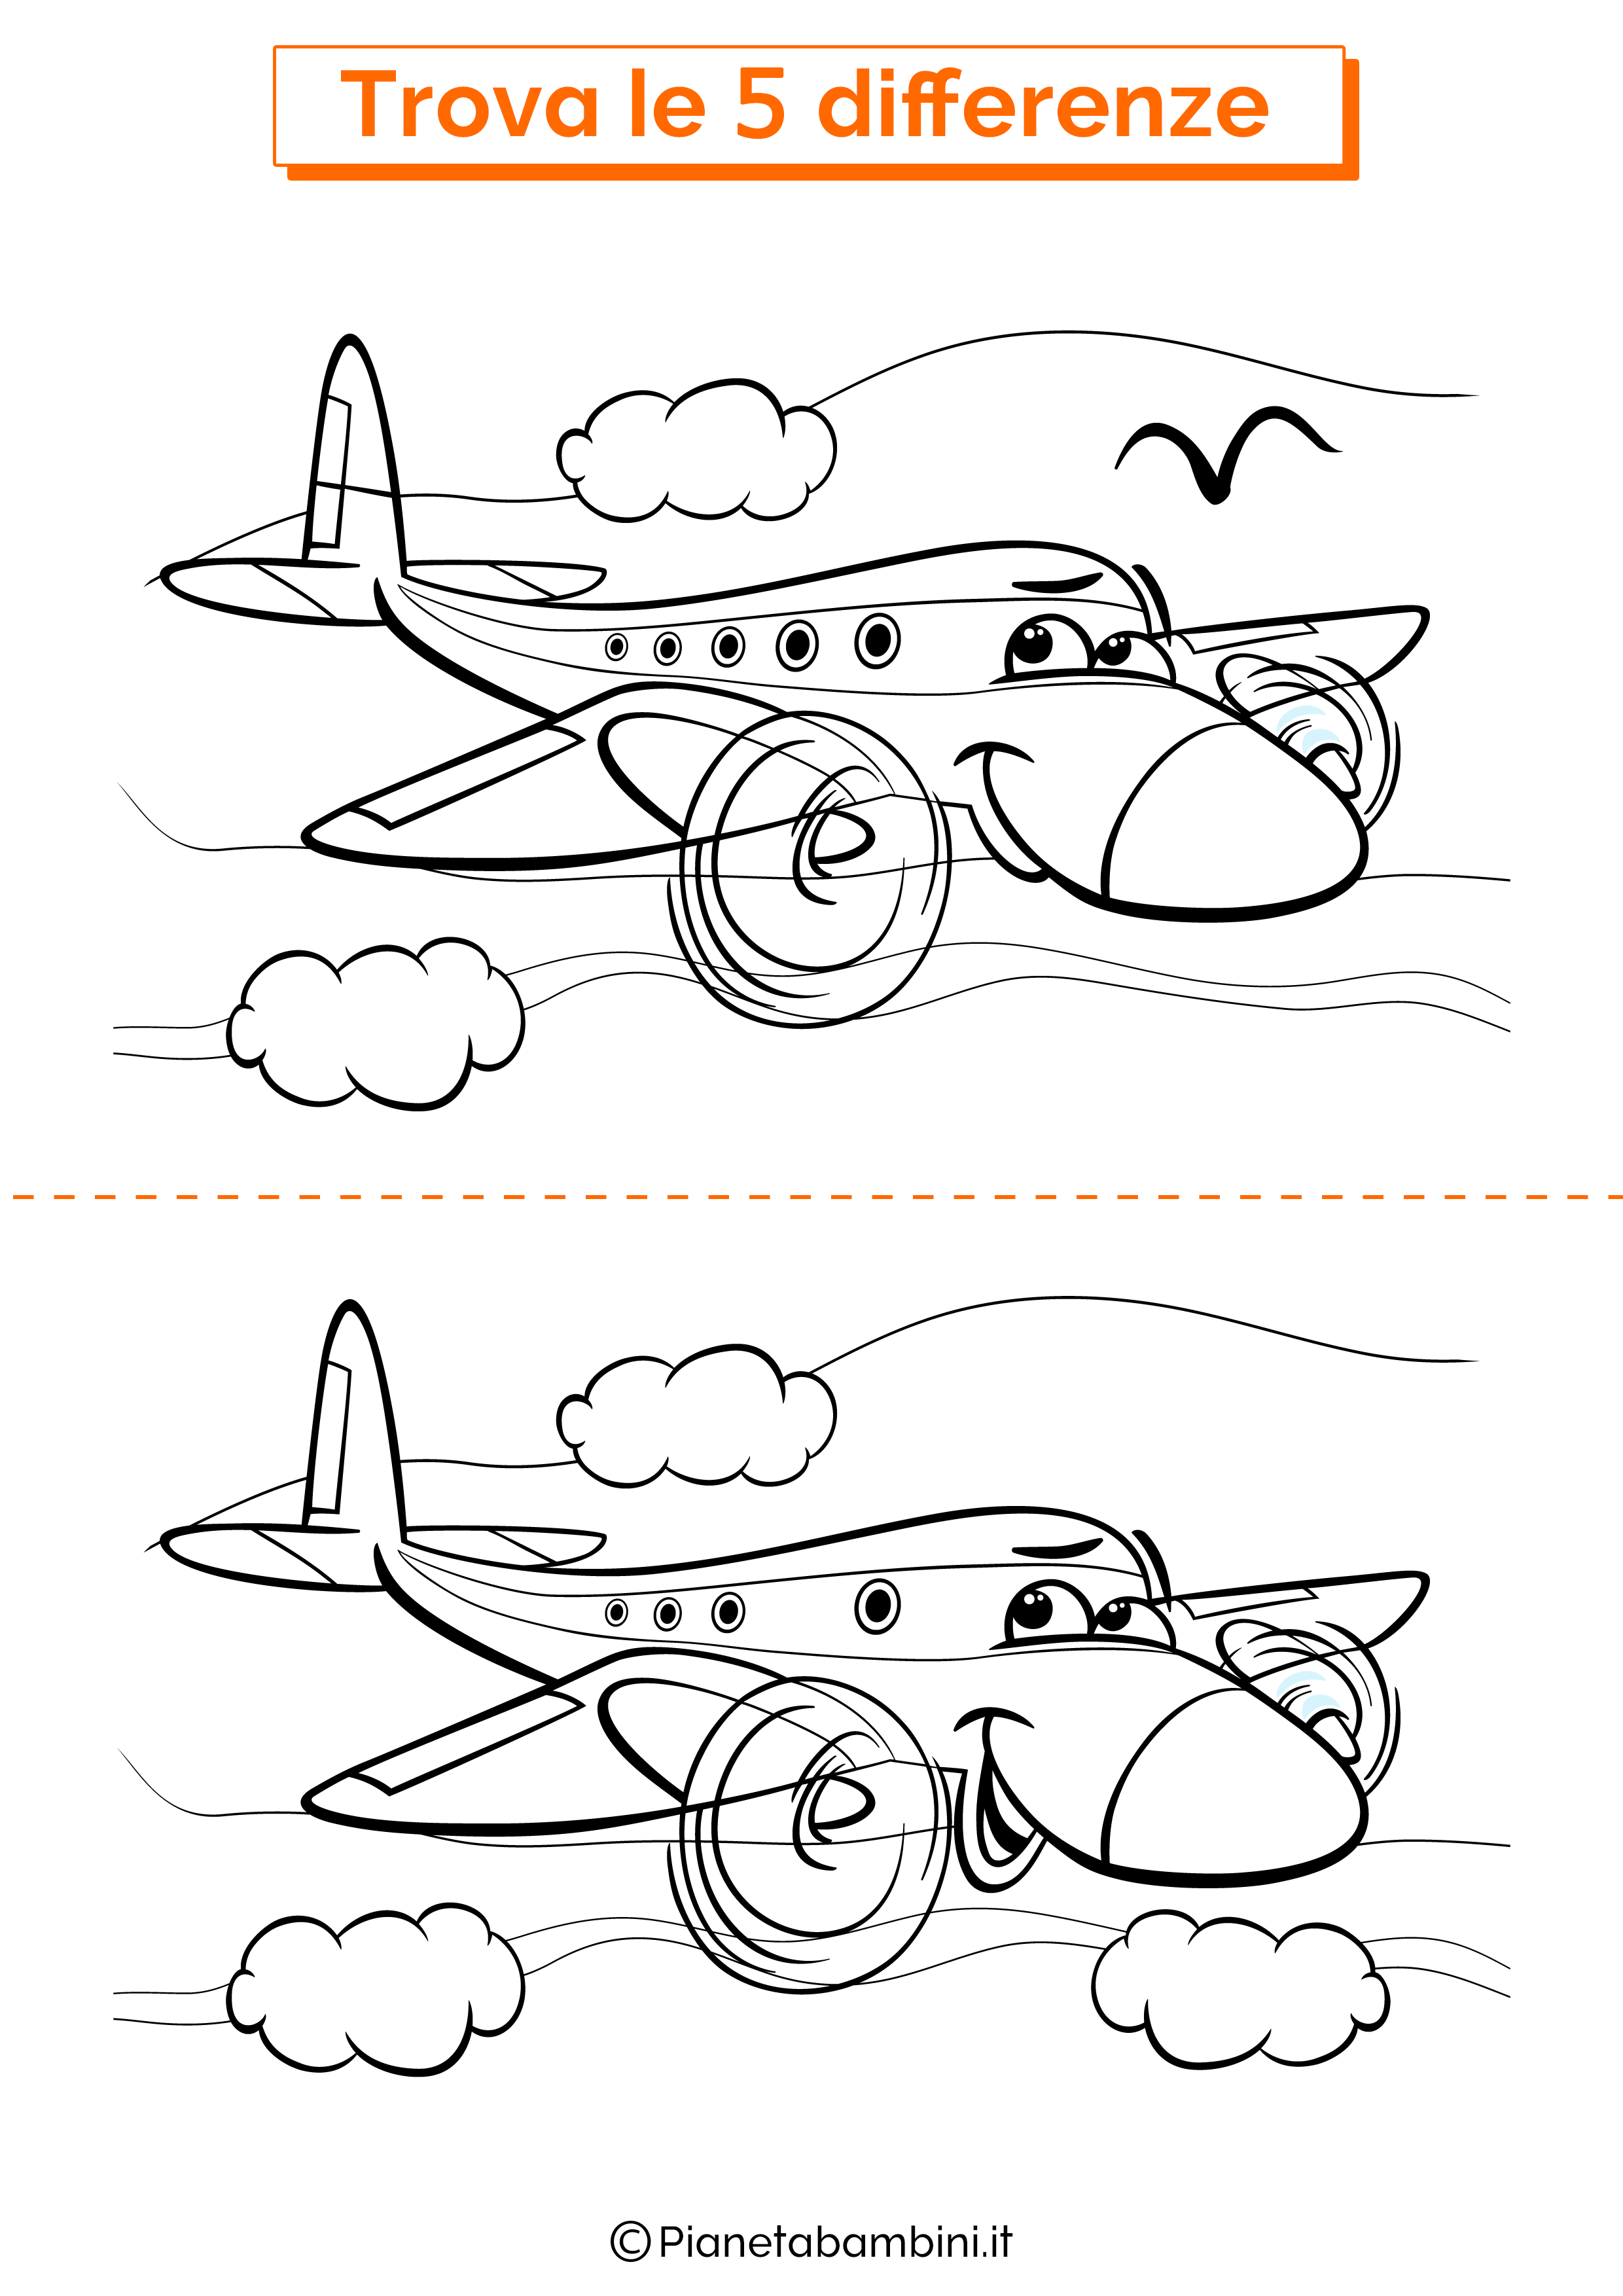 Disegno trova 5 differenze aereoplano